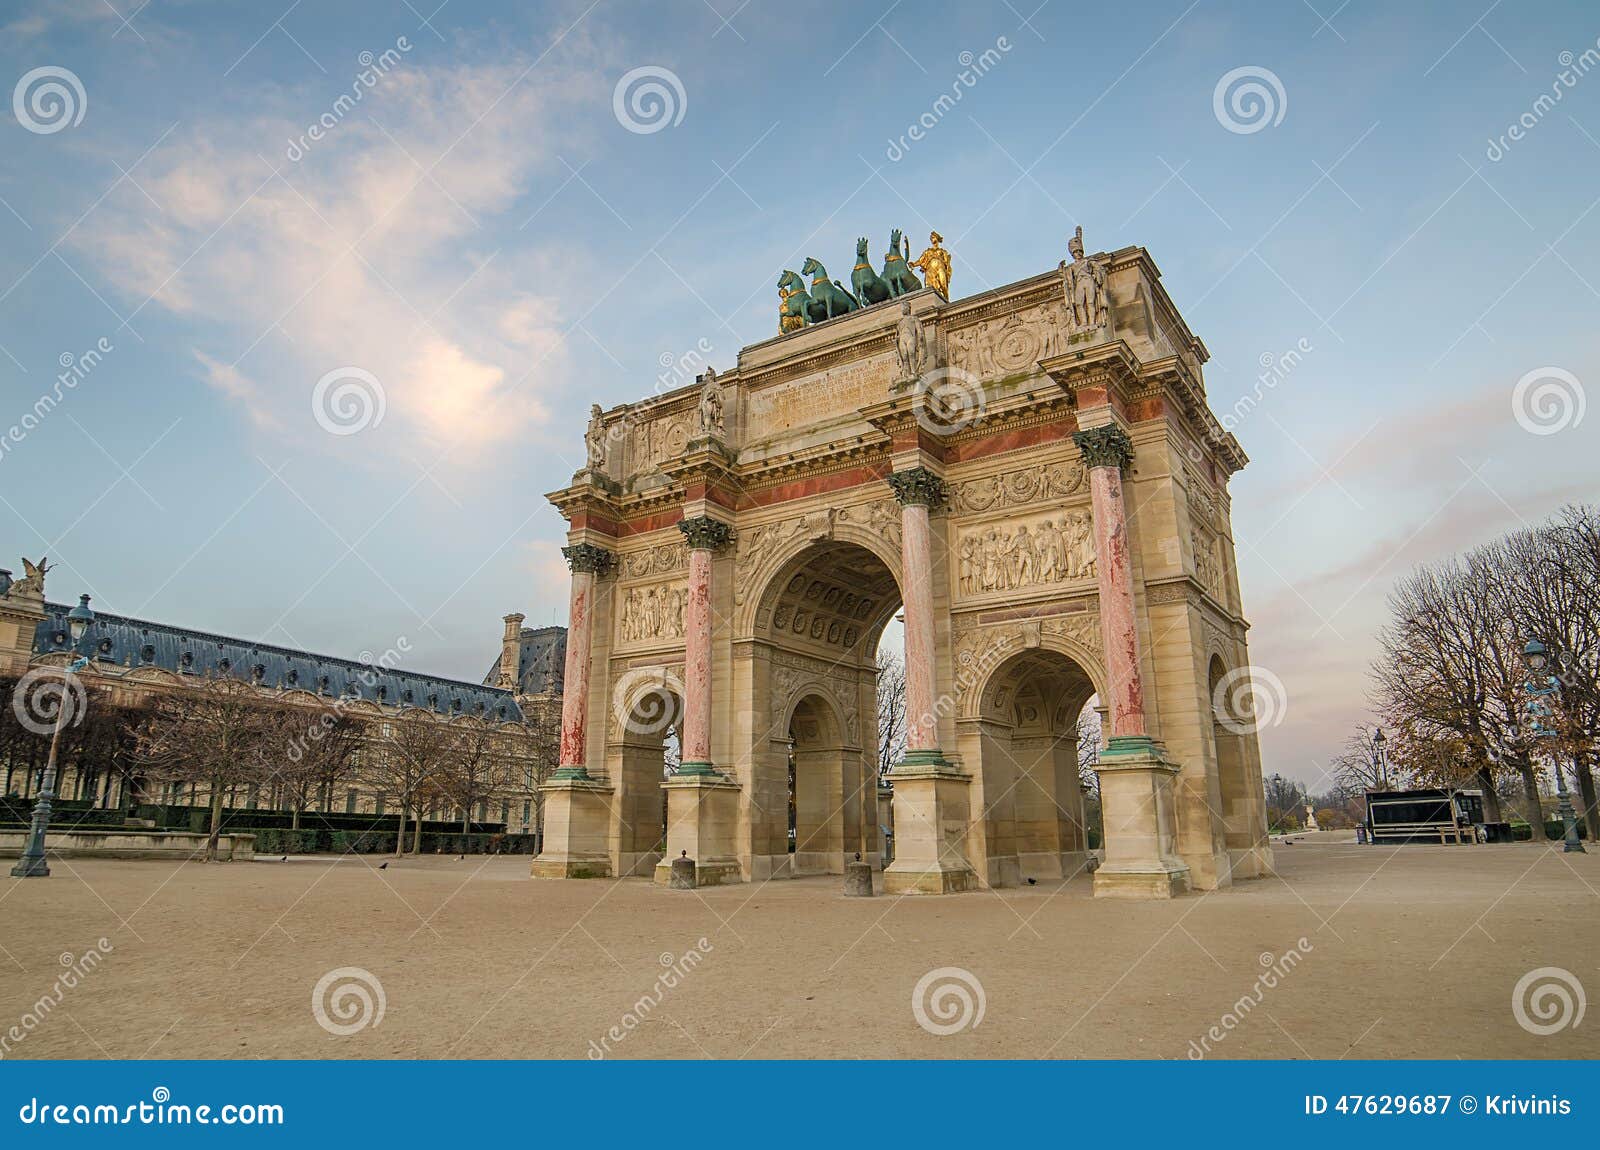 1805 1806 1808弧曲拱转盘纪念被委任的courtyard de des详细资料du emperor法国我位于的jardin连结天窗军事模型拿破仑・巴黎位置四马二轮战车罗马s septimius severus今天冠上胜利是的triomphe凯旋式. AParis (法国) 凯旋门在日出的du Carrousel